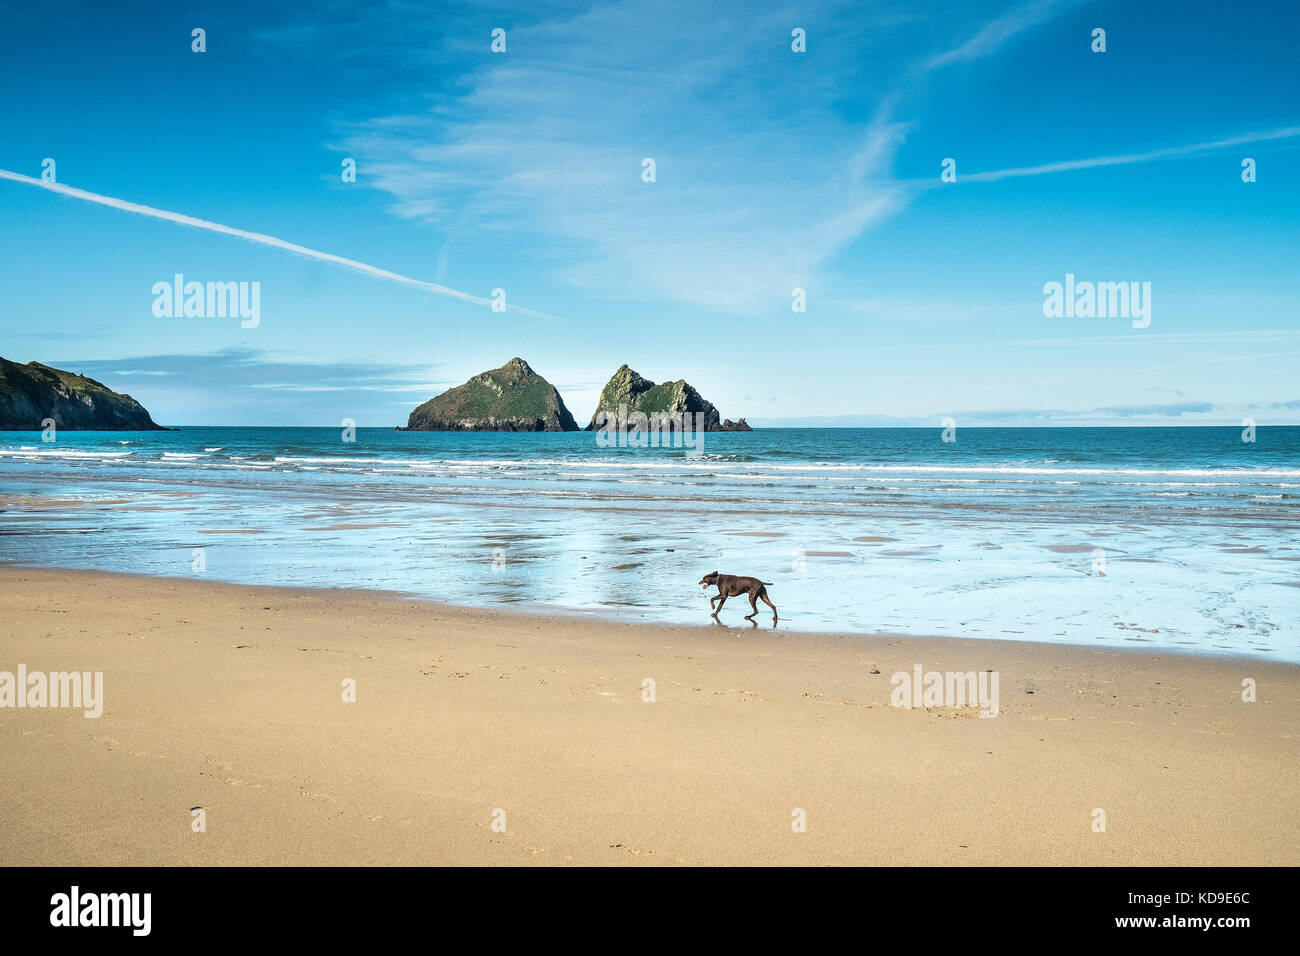 Un chien courant le long de la plage à Holywell Bay Cornwall - Gull Rocks. Holywell Bay l'un des lieux de tournage emblématiques de Poldark en Cornouailles. Banque D'Images